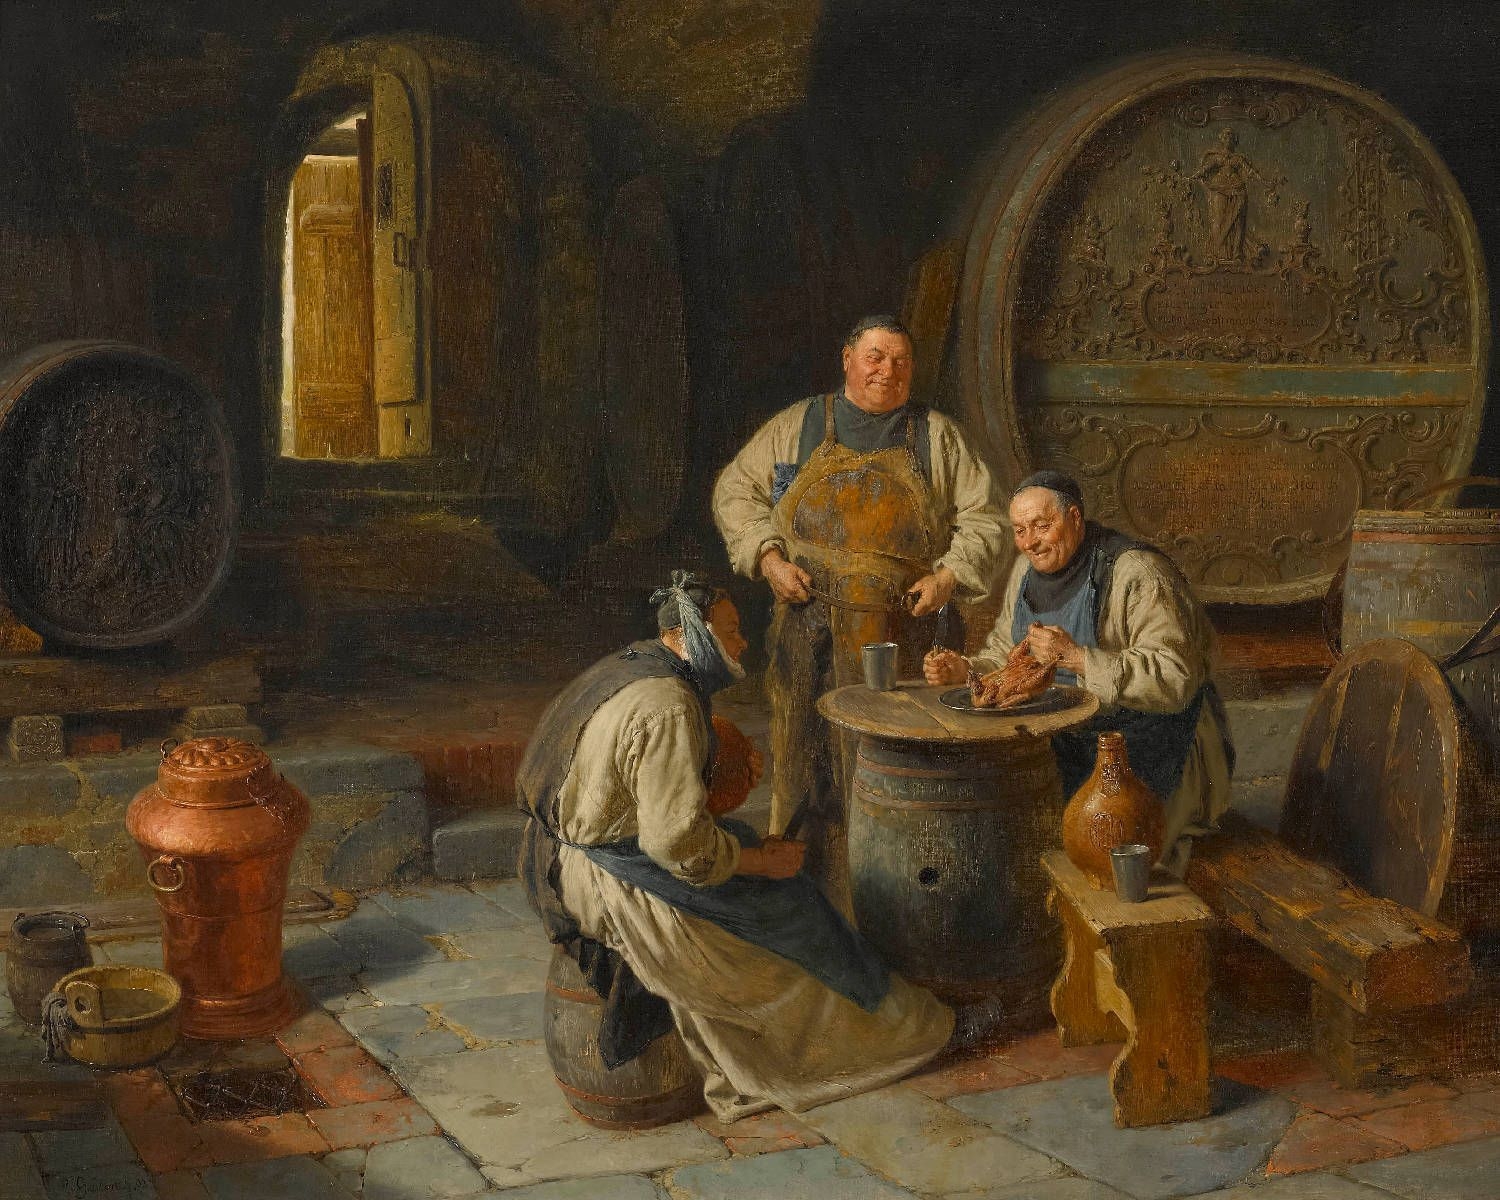 Eduard von Grützner: il “sommo” pittore di monaci e birra